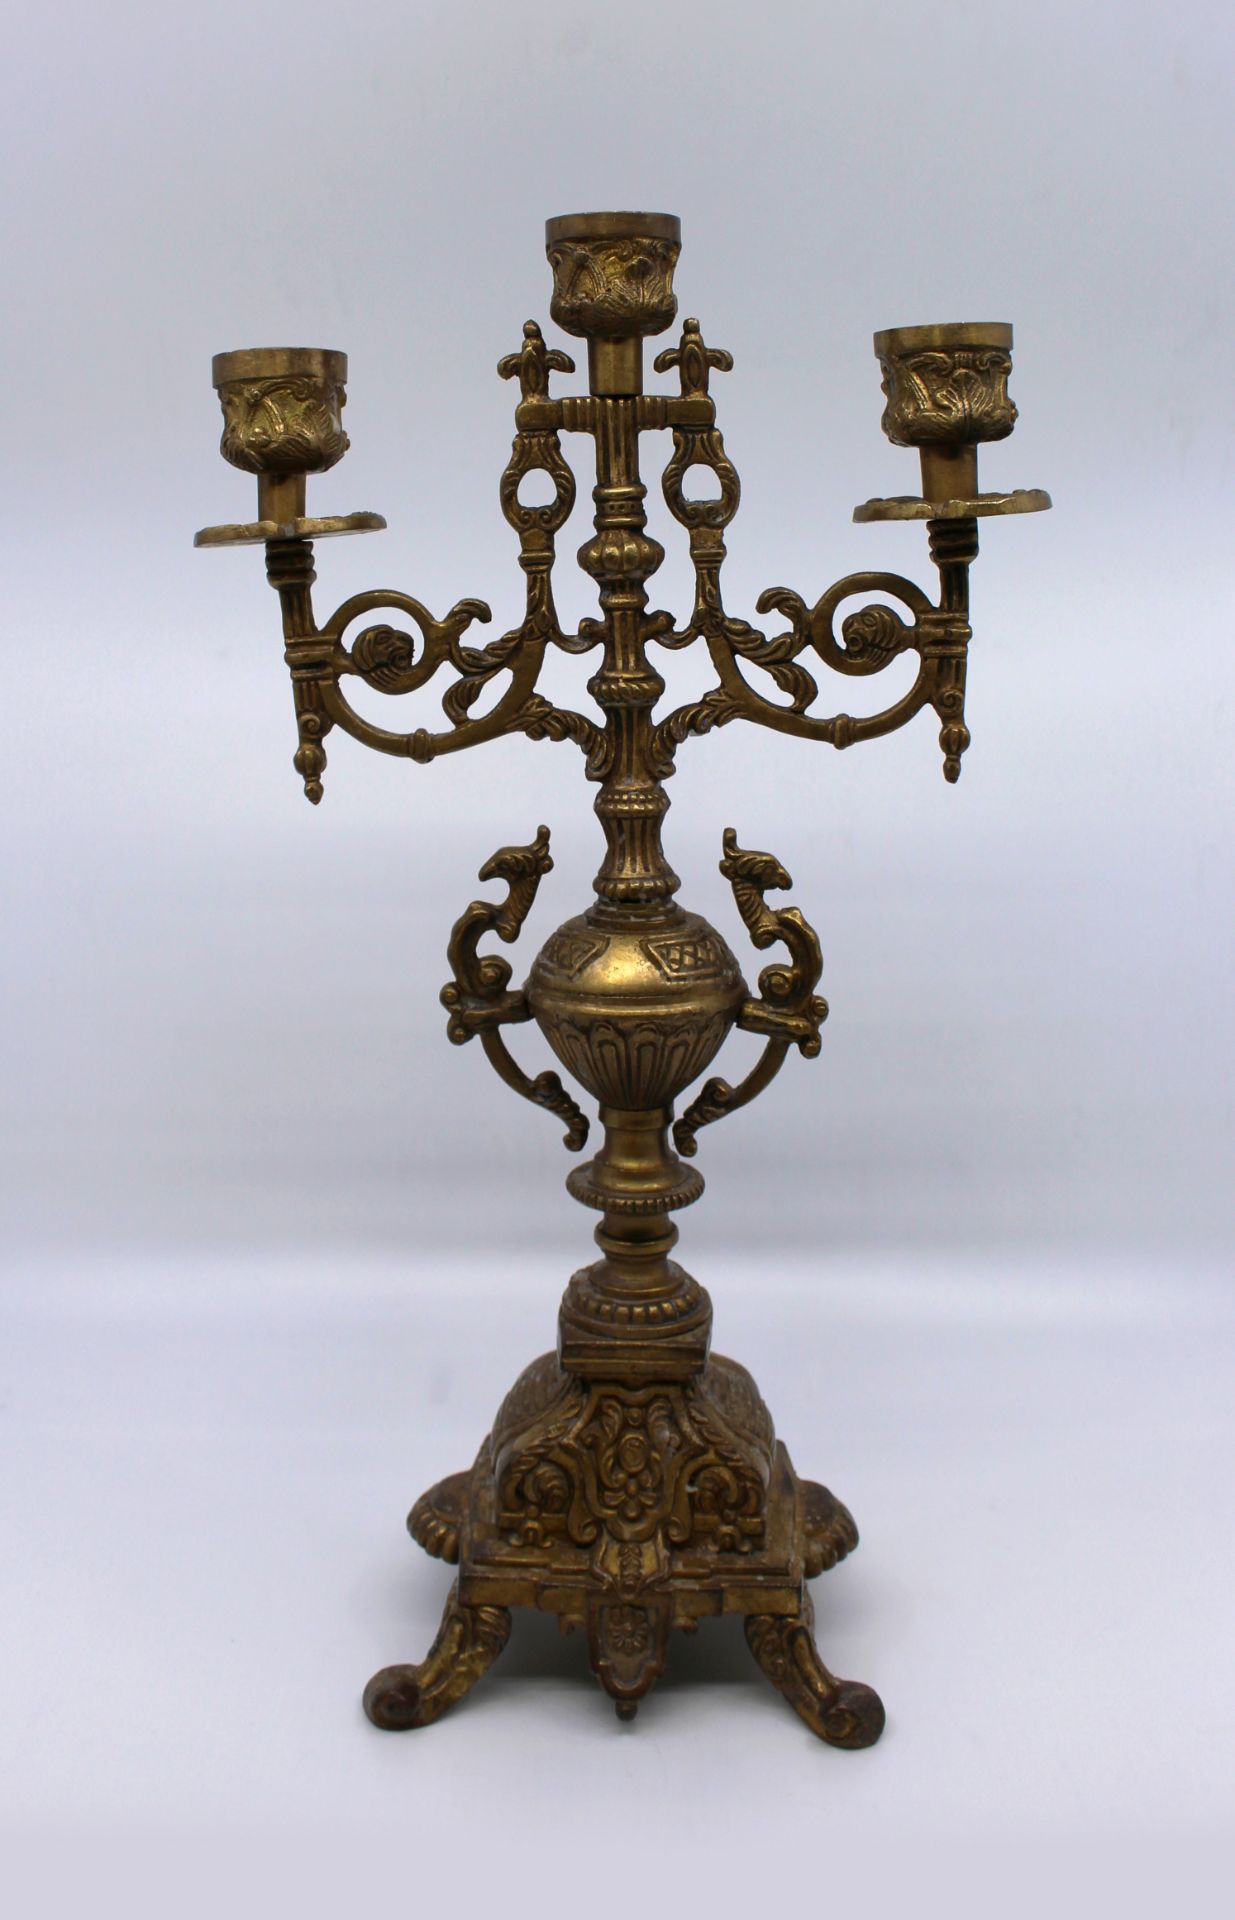 Ornate Solid Brass Candelabra - Image 3 of 4